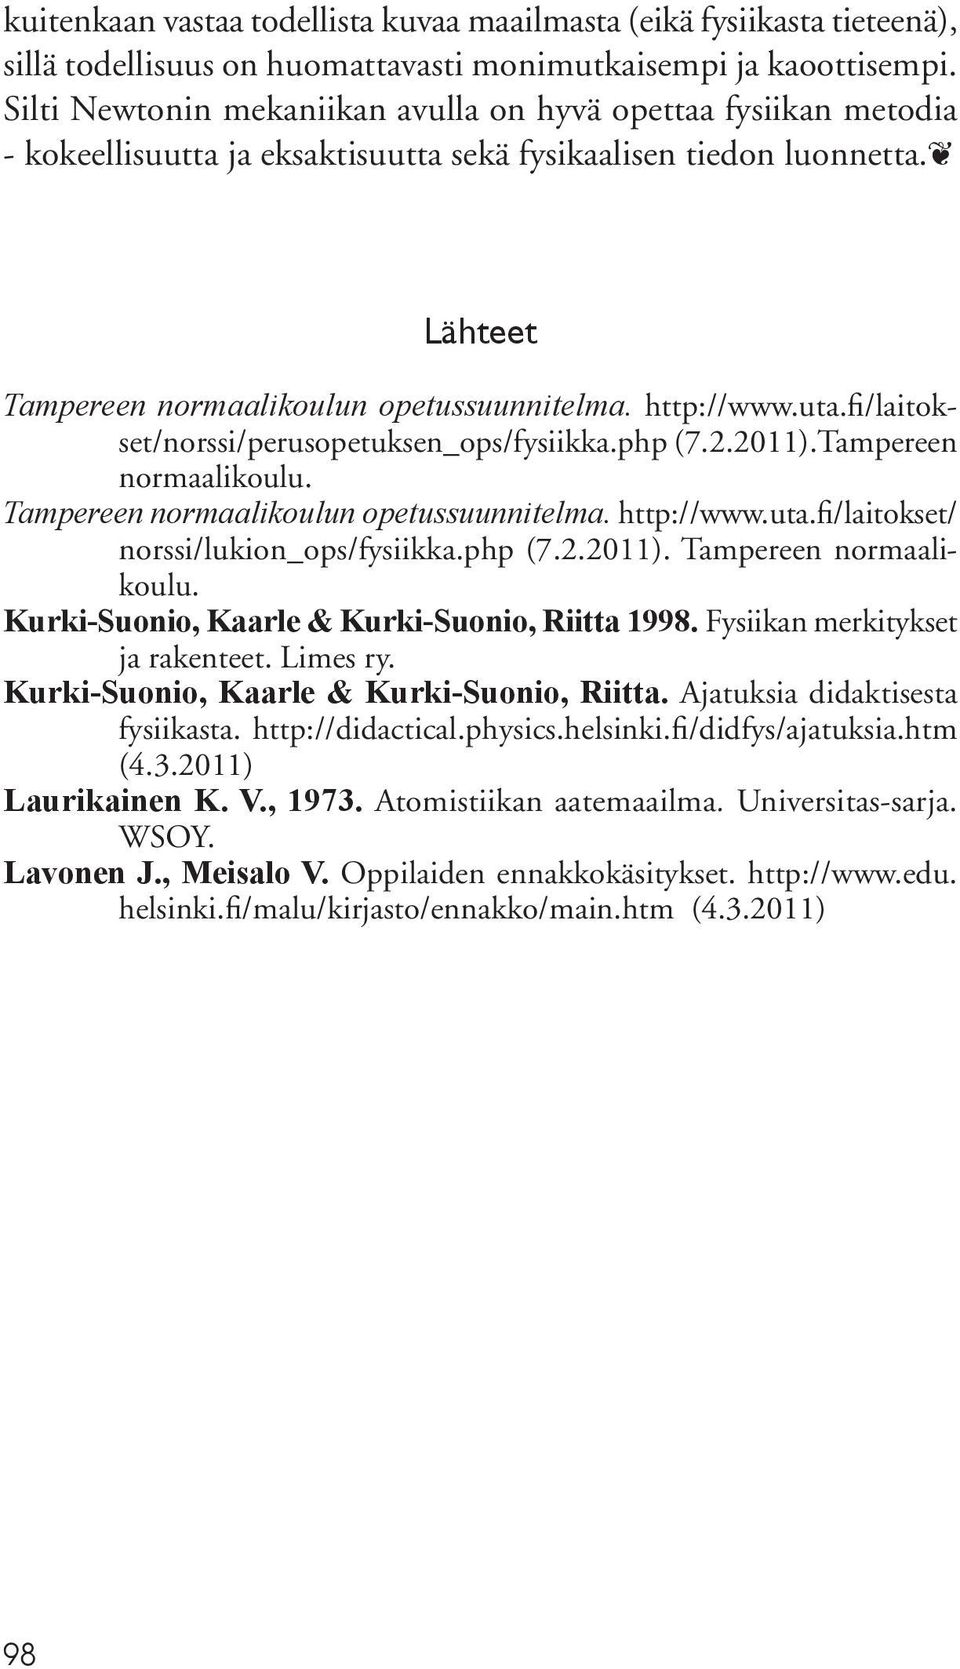 uta.fi/laitokset/norssi/perusopetuksen_ops/fysiikka.php (7.2.2011).Tampereen normaalikoulu. Tampereen normaalikoulun opetussuunnitelma. http://www.uta.fi/laitokset/ norssi/lukion_ops/fysiikka.php (7.2.2011). Tampereen normaalikoulu. Kurki-Suonio, Kaarle & Kurki-Suonio, Riitta 1998.